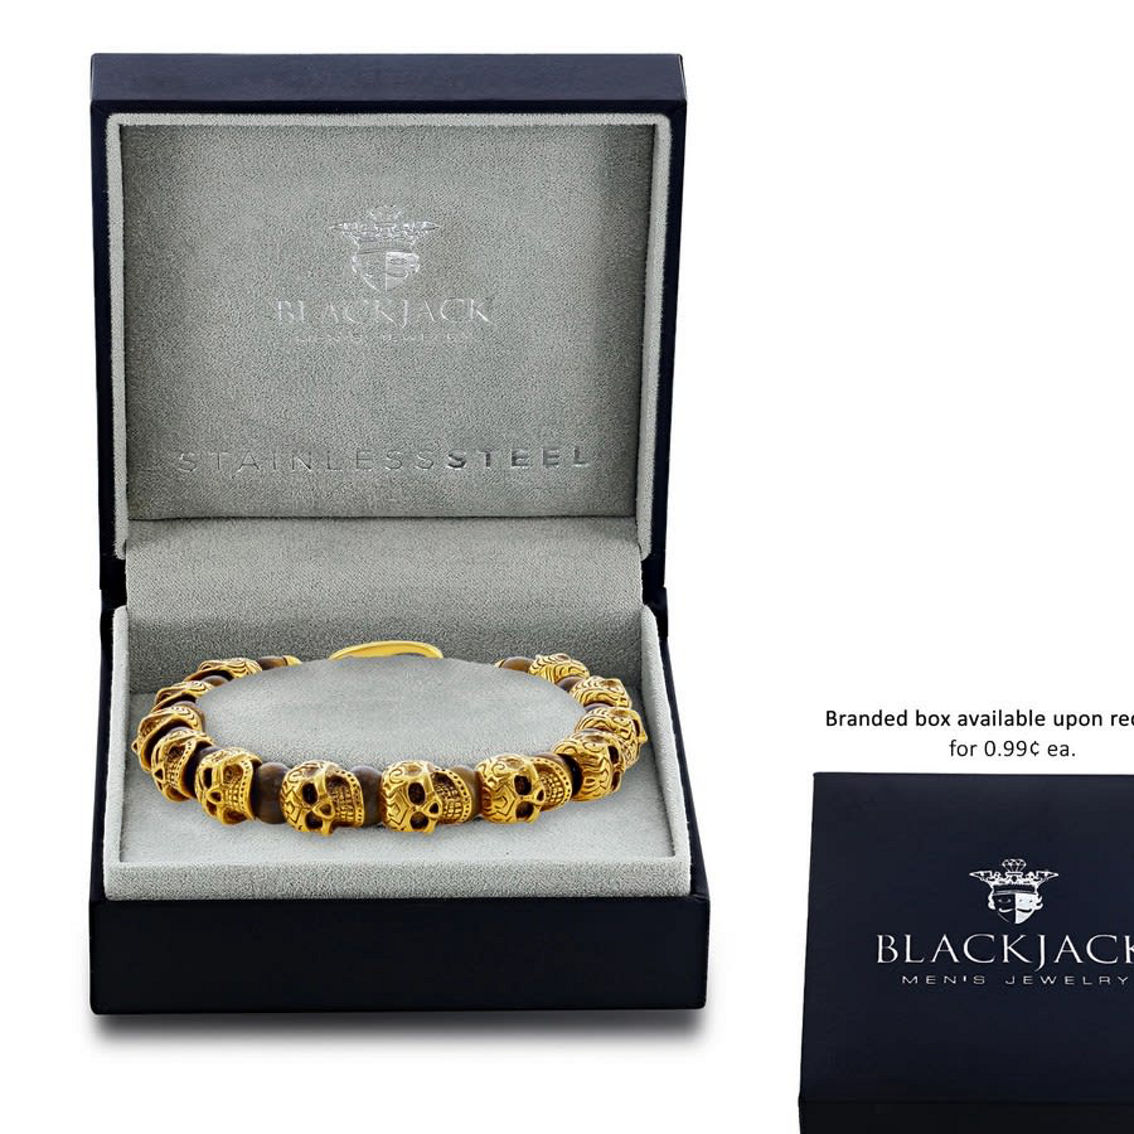 Metallo Stainless Steel Genuine Tiger Eye Beads Skull Bracelet - Gold Plated - Image 3 of 4